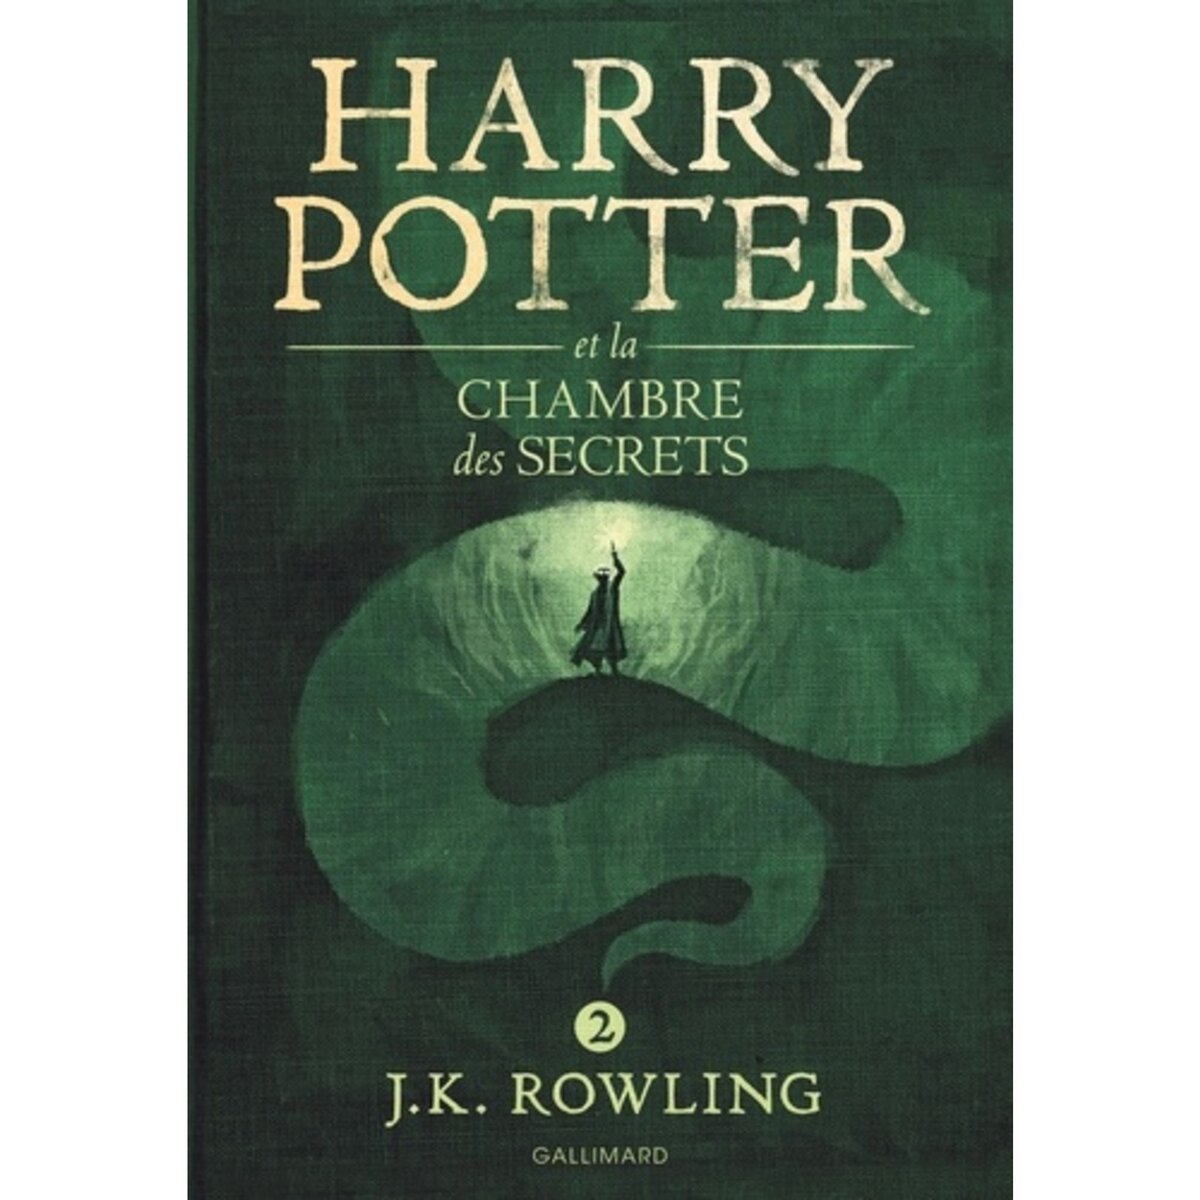  HARRY POTTER TOME 2 : HARRY POTTER ET LA CHAMBRE DES SECRETS, Rowling J.K.